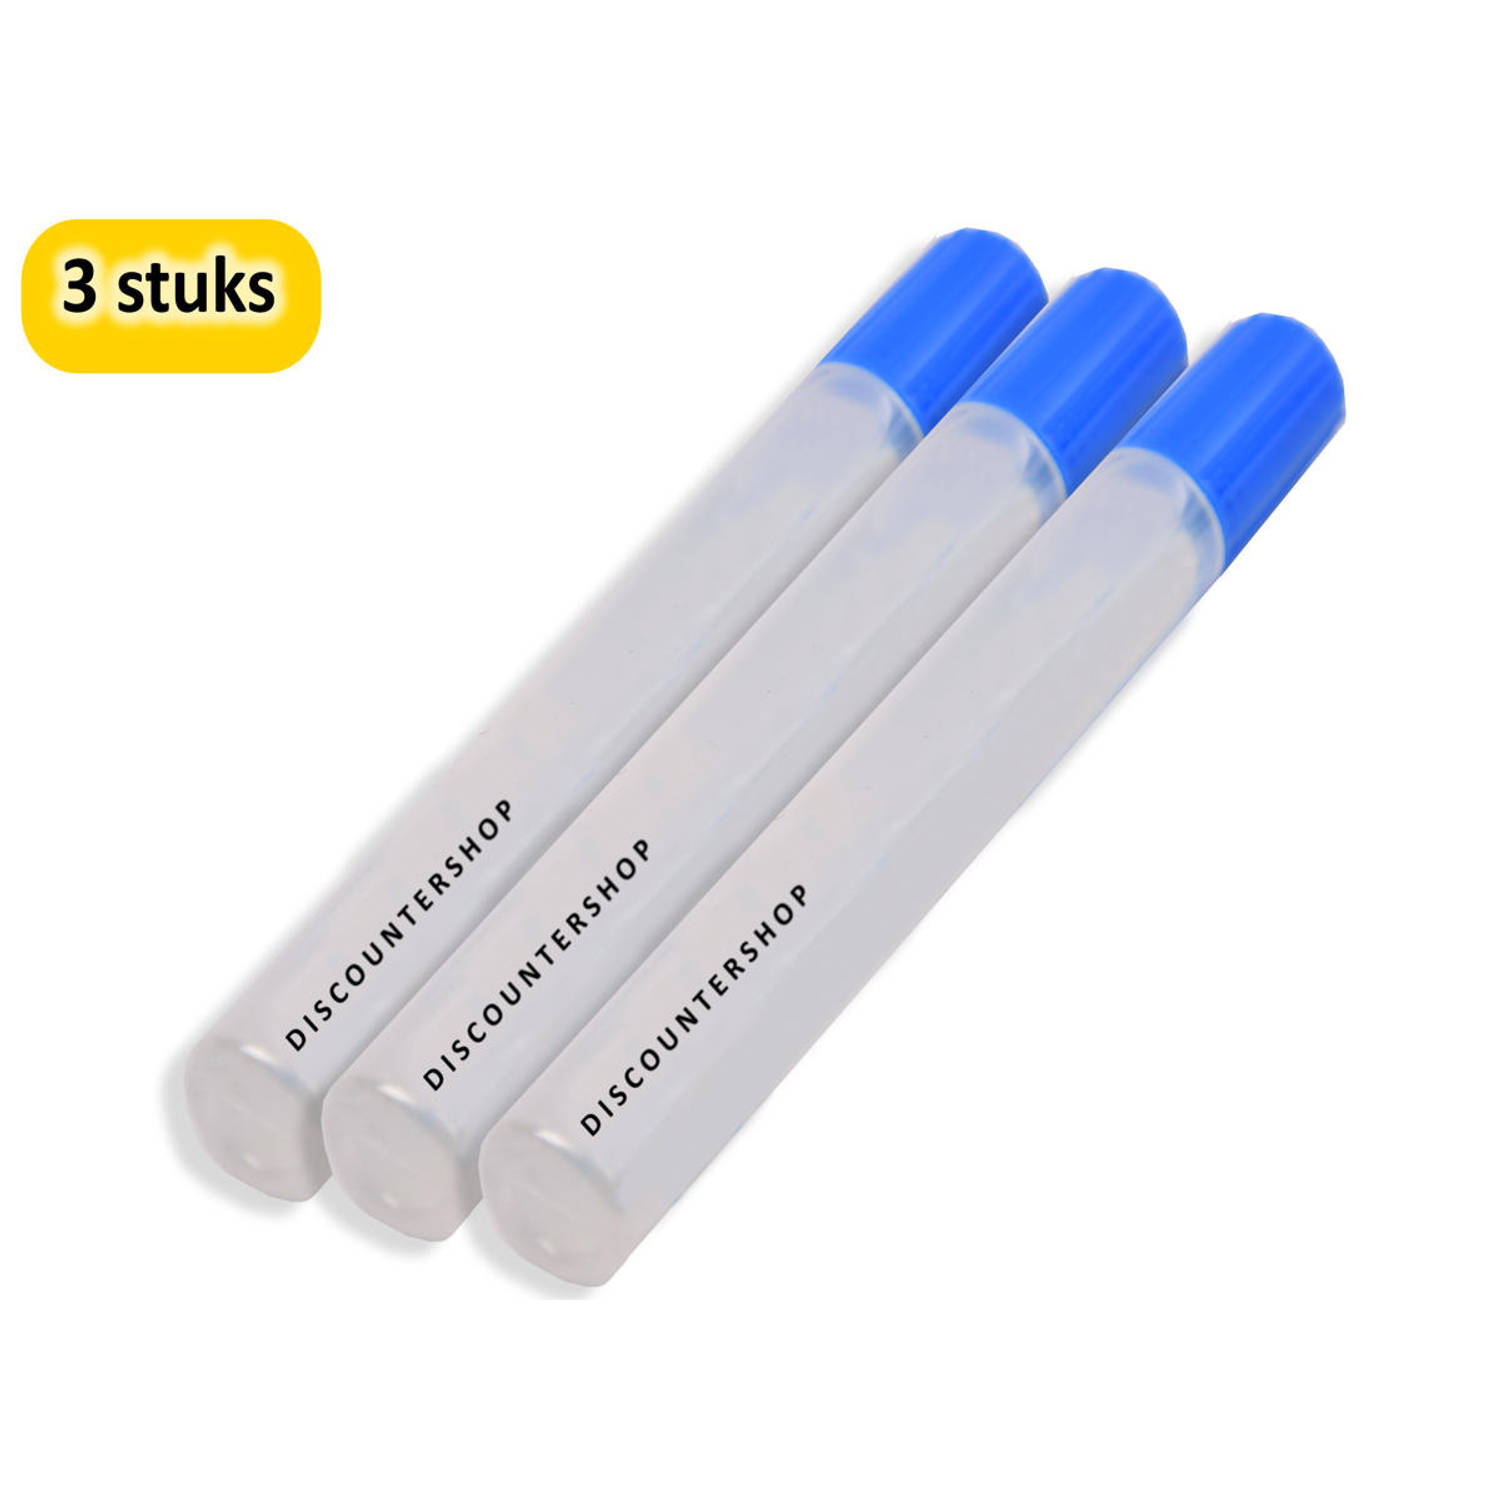 Hobbylijm Glue Pen 50 Gram - 3 Stuks Verpakking - Voor Precisiewerk en Handige Lijmtoepassingen